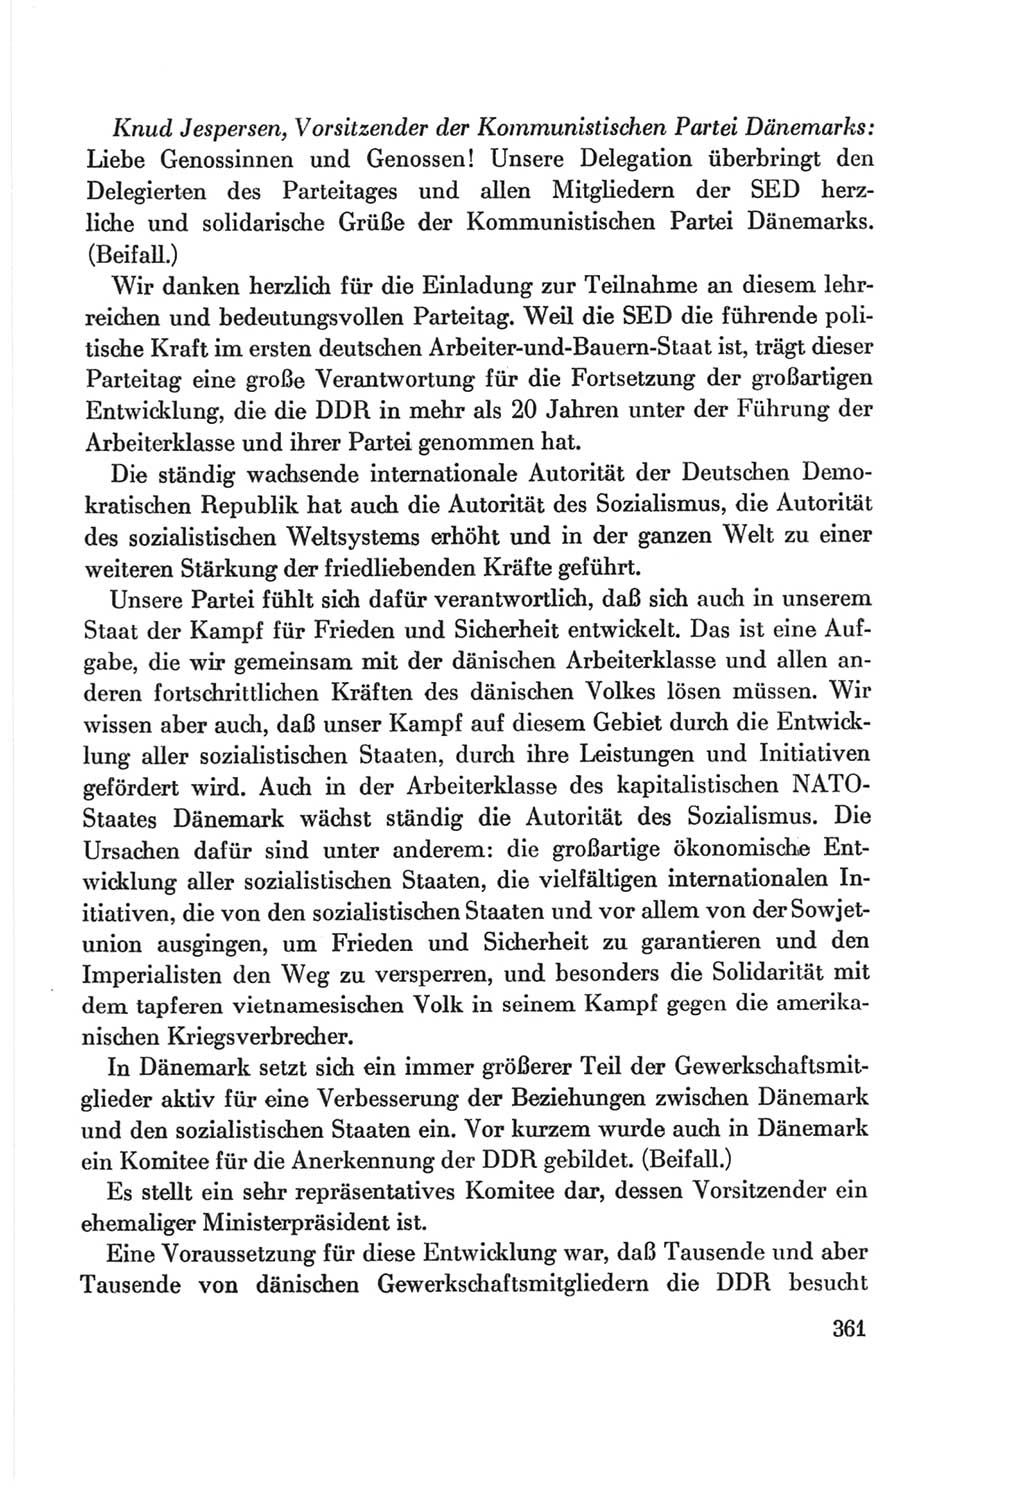 Protokoll der Verhandlungen des Ⅷ. Parteitages der Sozialistischen Einheitspartei Deutschlands (SED) [Deutsche Demokratische Republik (DDR)] 1971, Band 1, Seite 361 (Prot. Verh. Ⅷ. PT SED DDR 1971, Bd. 1, S. 361)